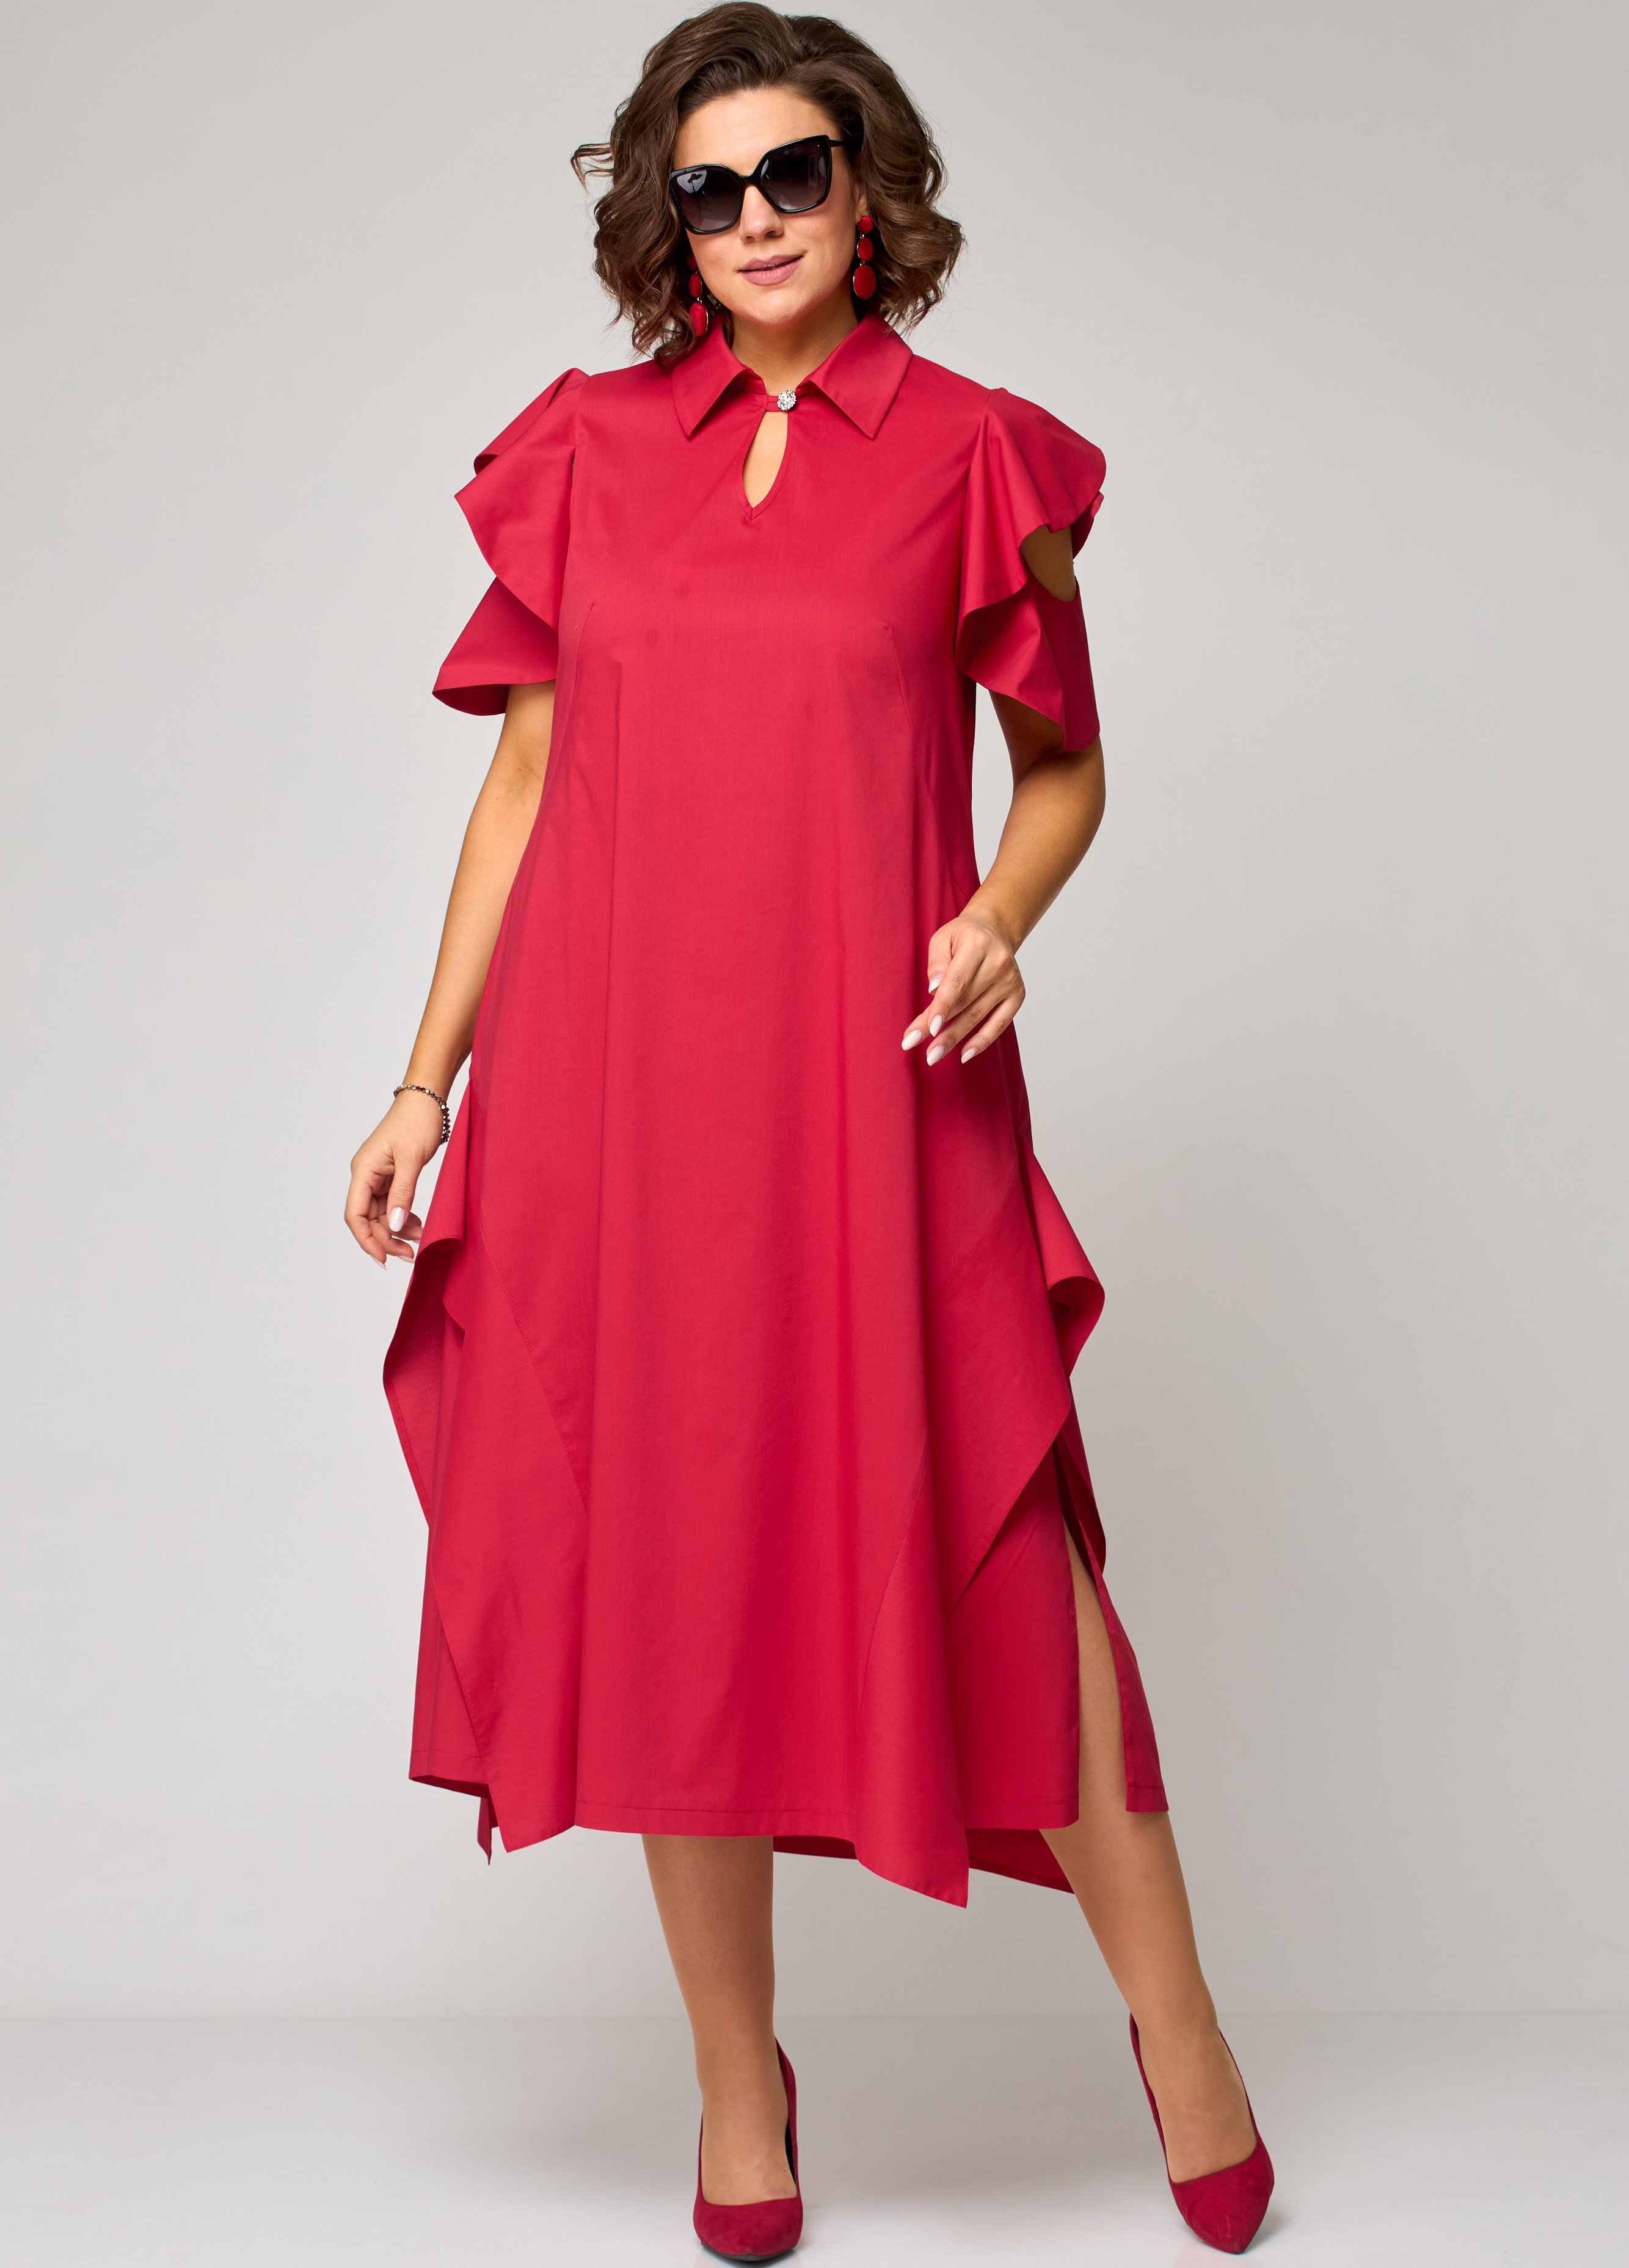 Платье EVA GRANT 7297 красный